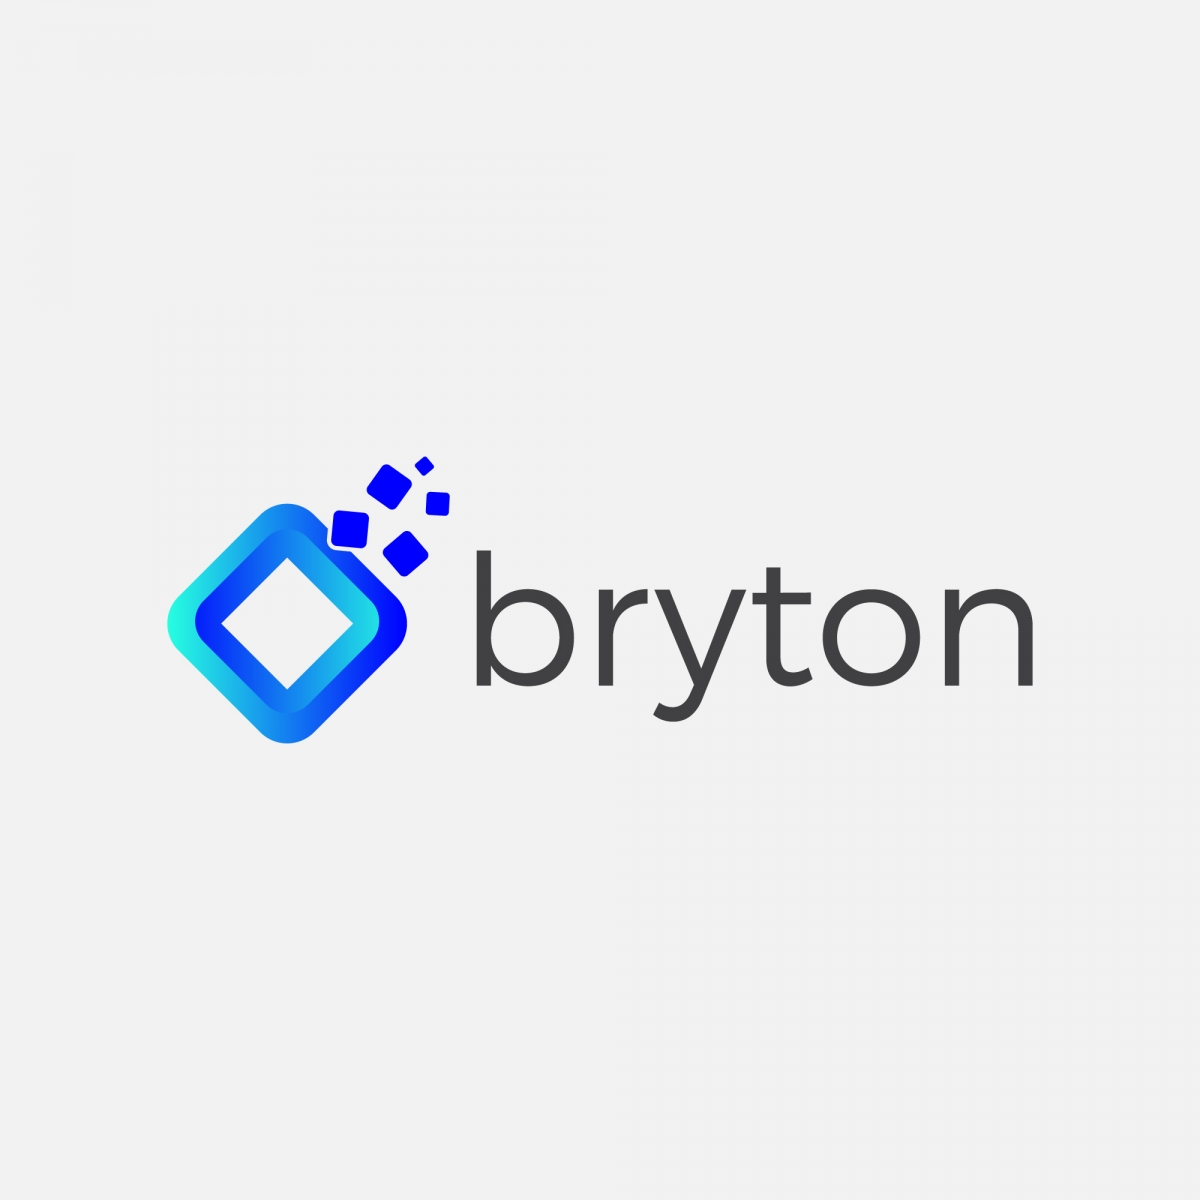 bryton-logo-a